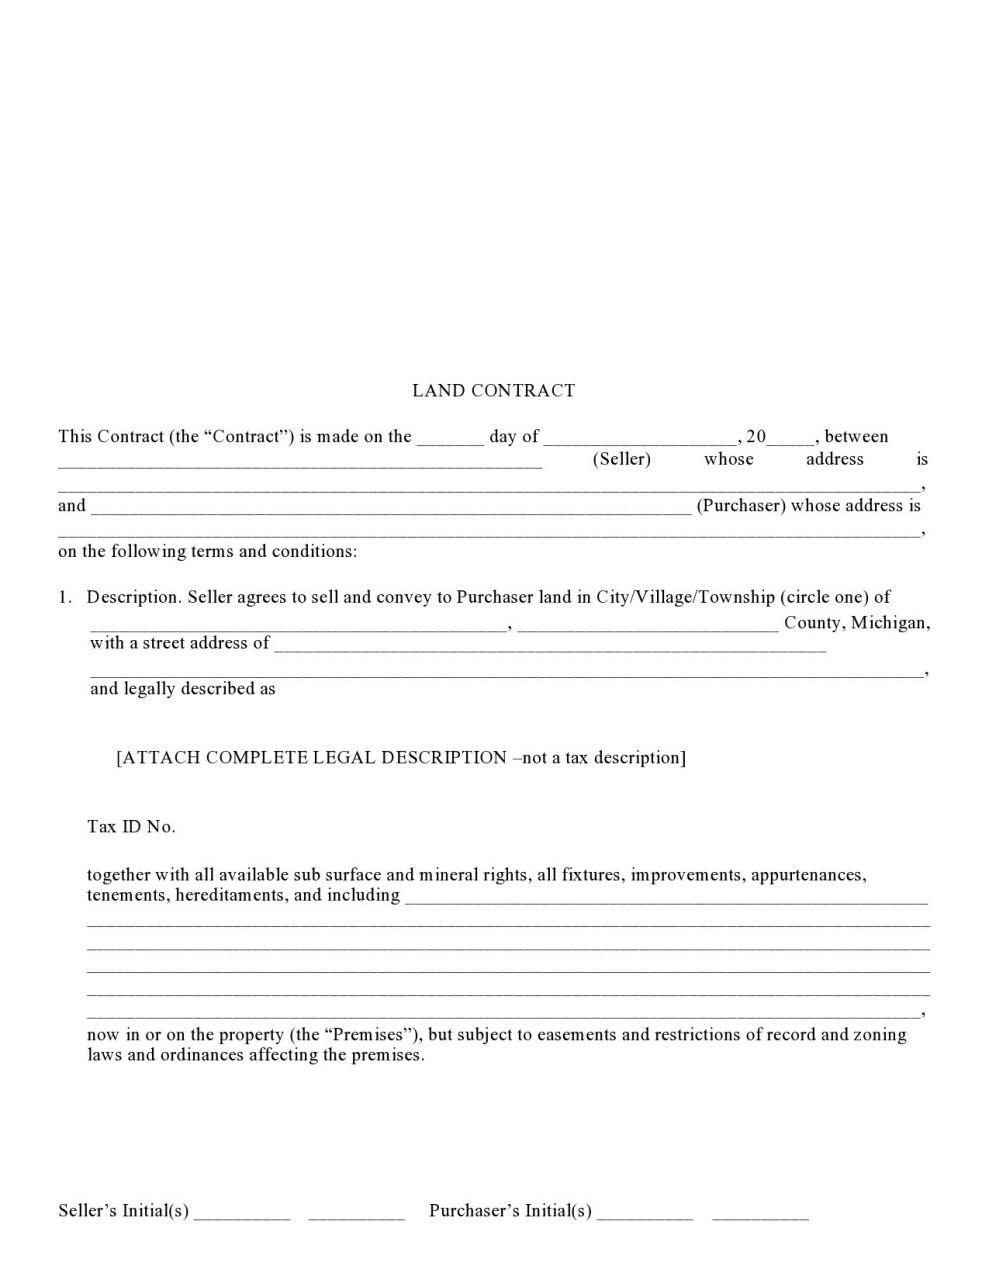 formulario de contrato de tierra gratis 23